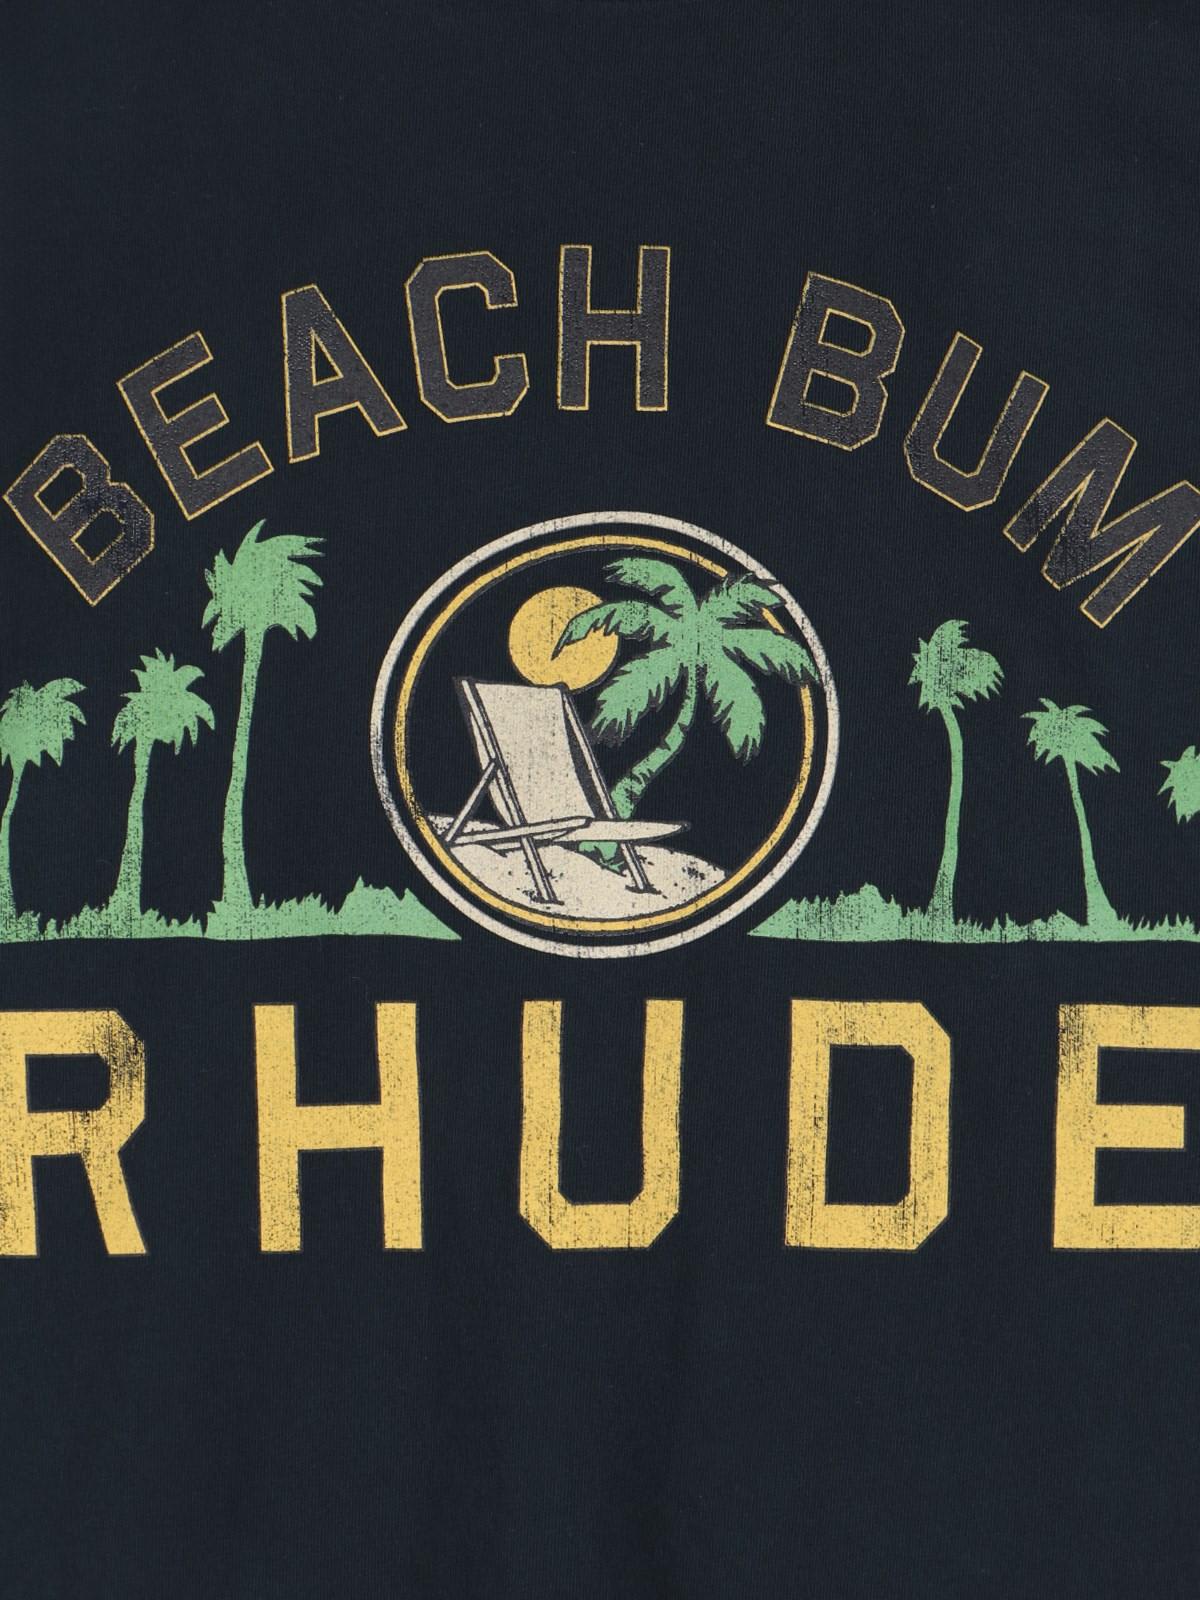 Shop Rhude Beach Bum T-shirt In Black